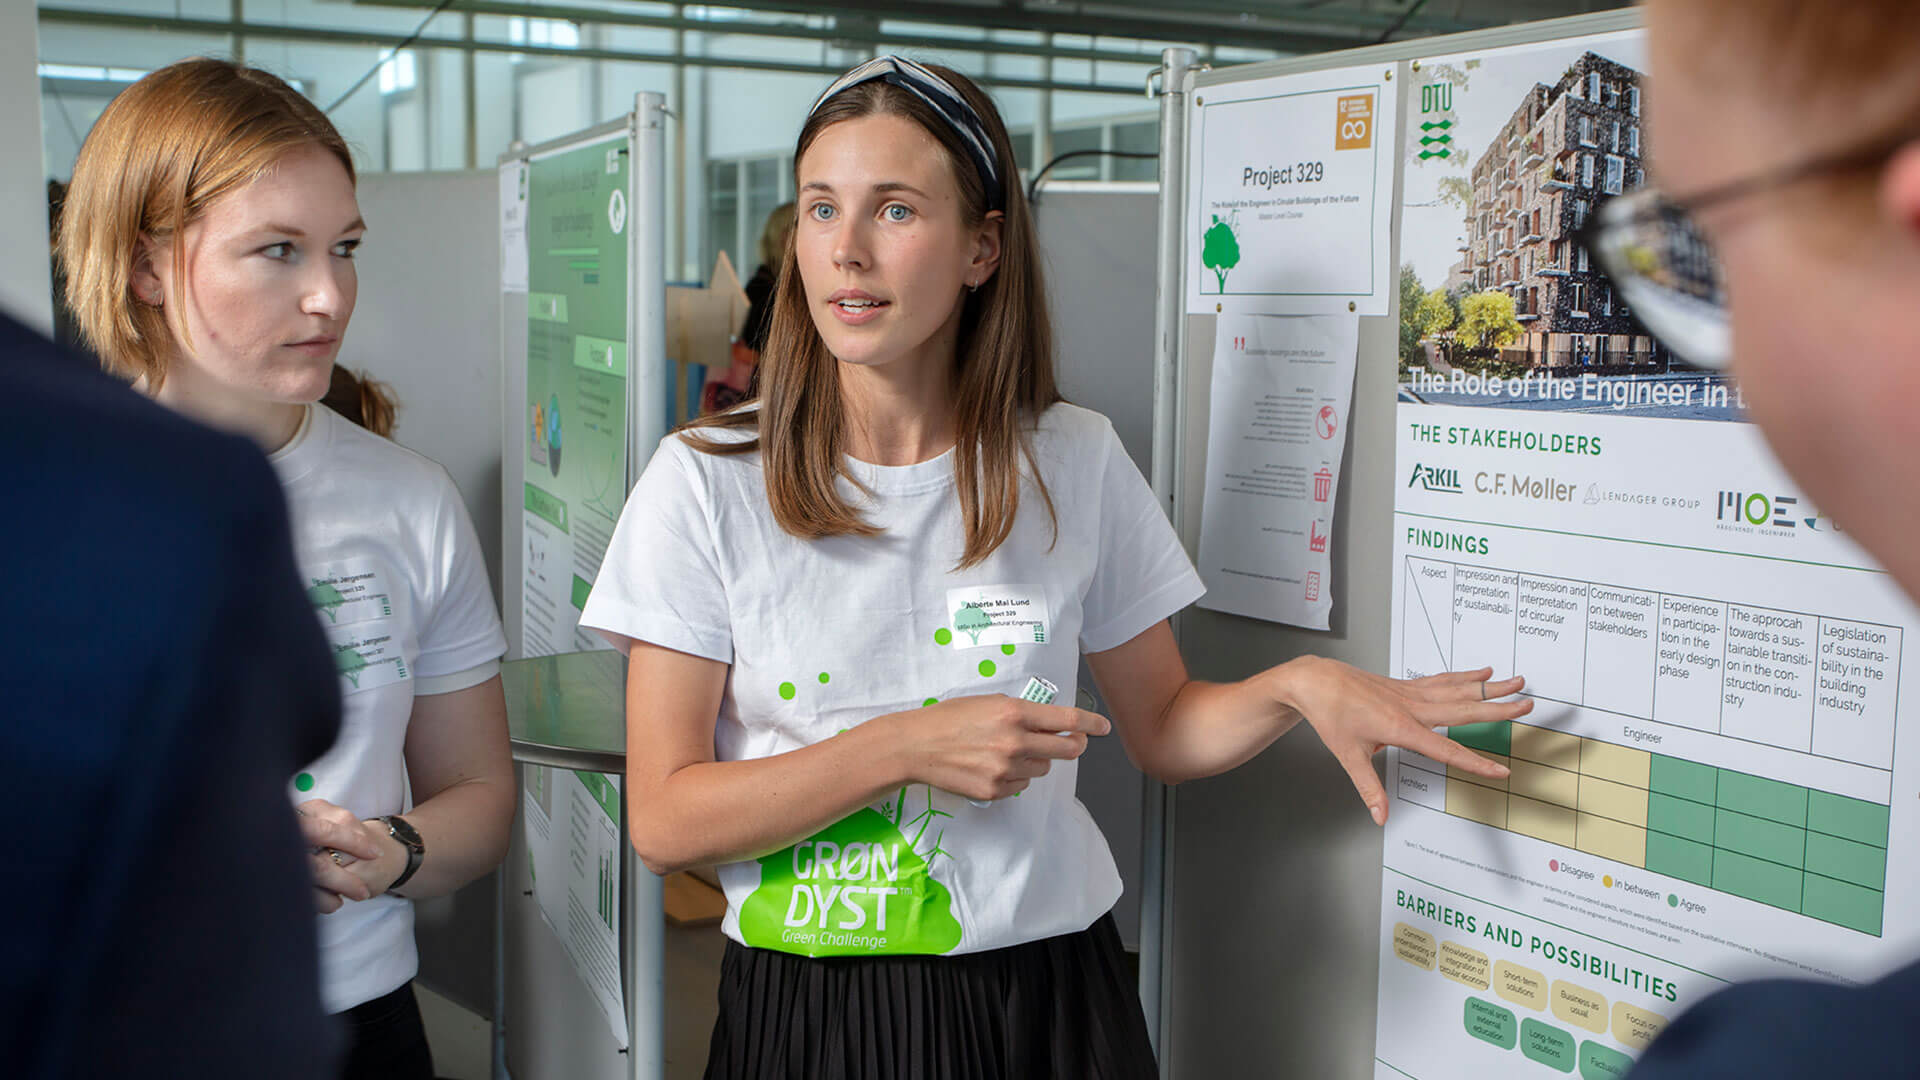 Studerende præsenterer deres projekt i forbindelse med Grøn Dyst 2021